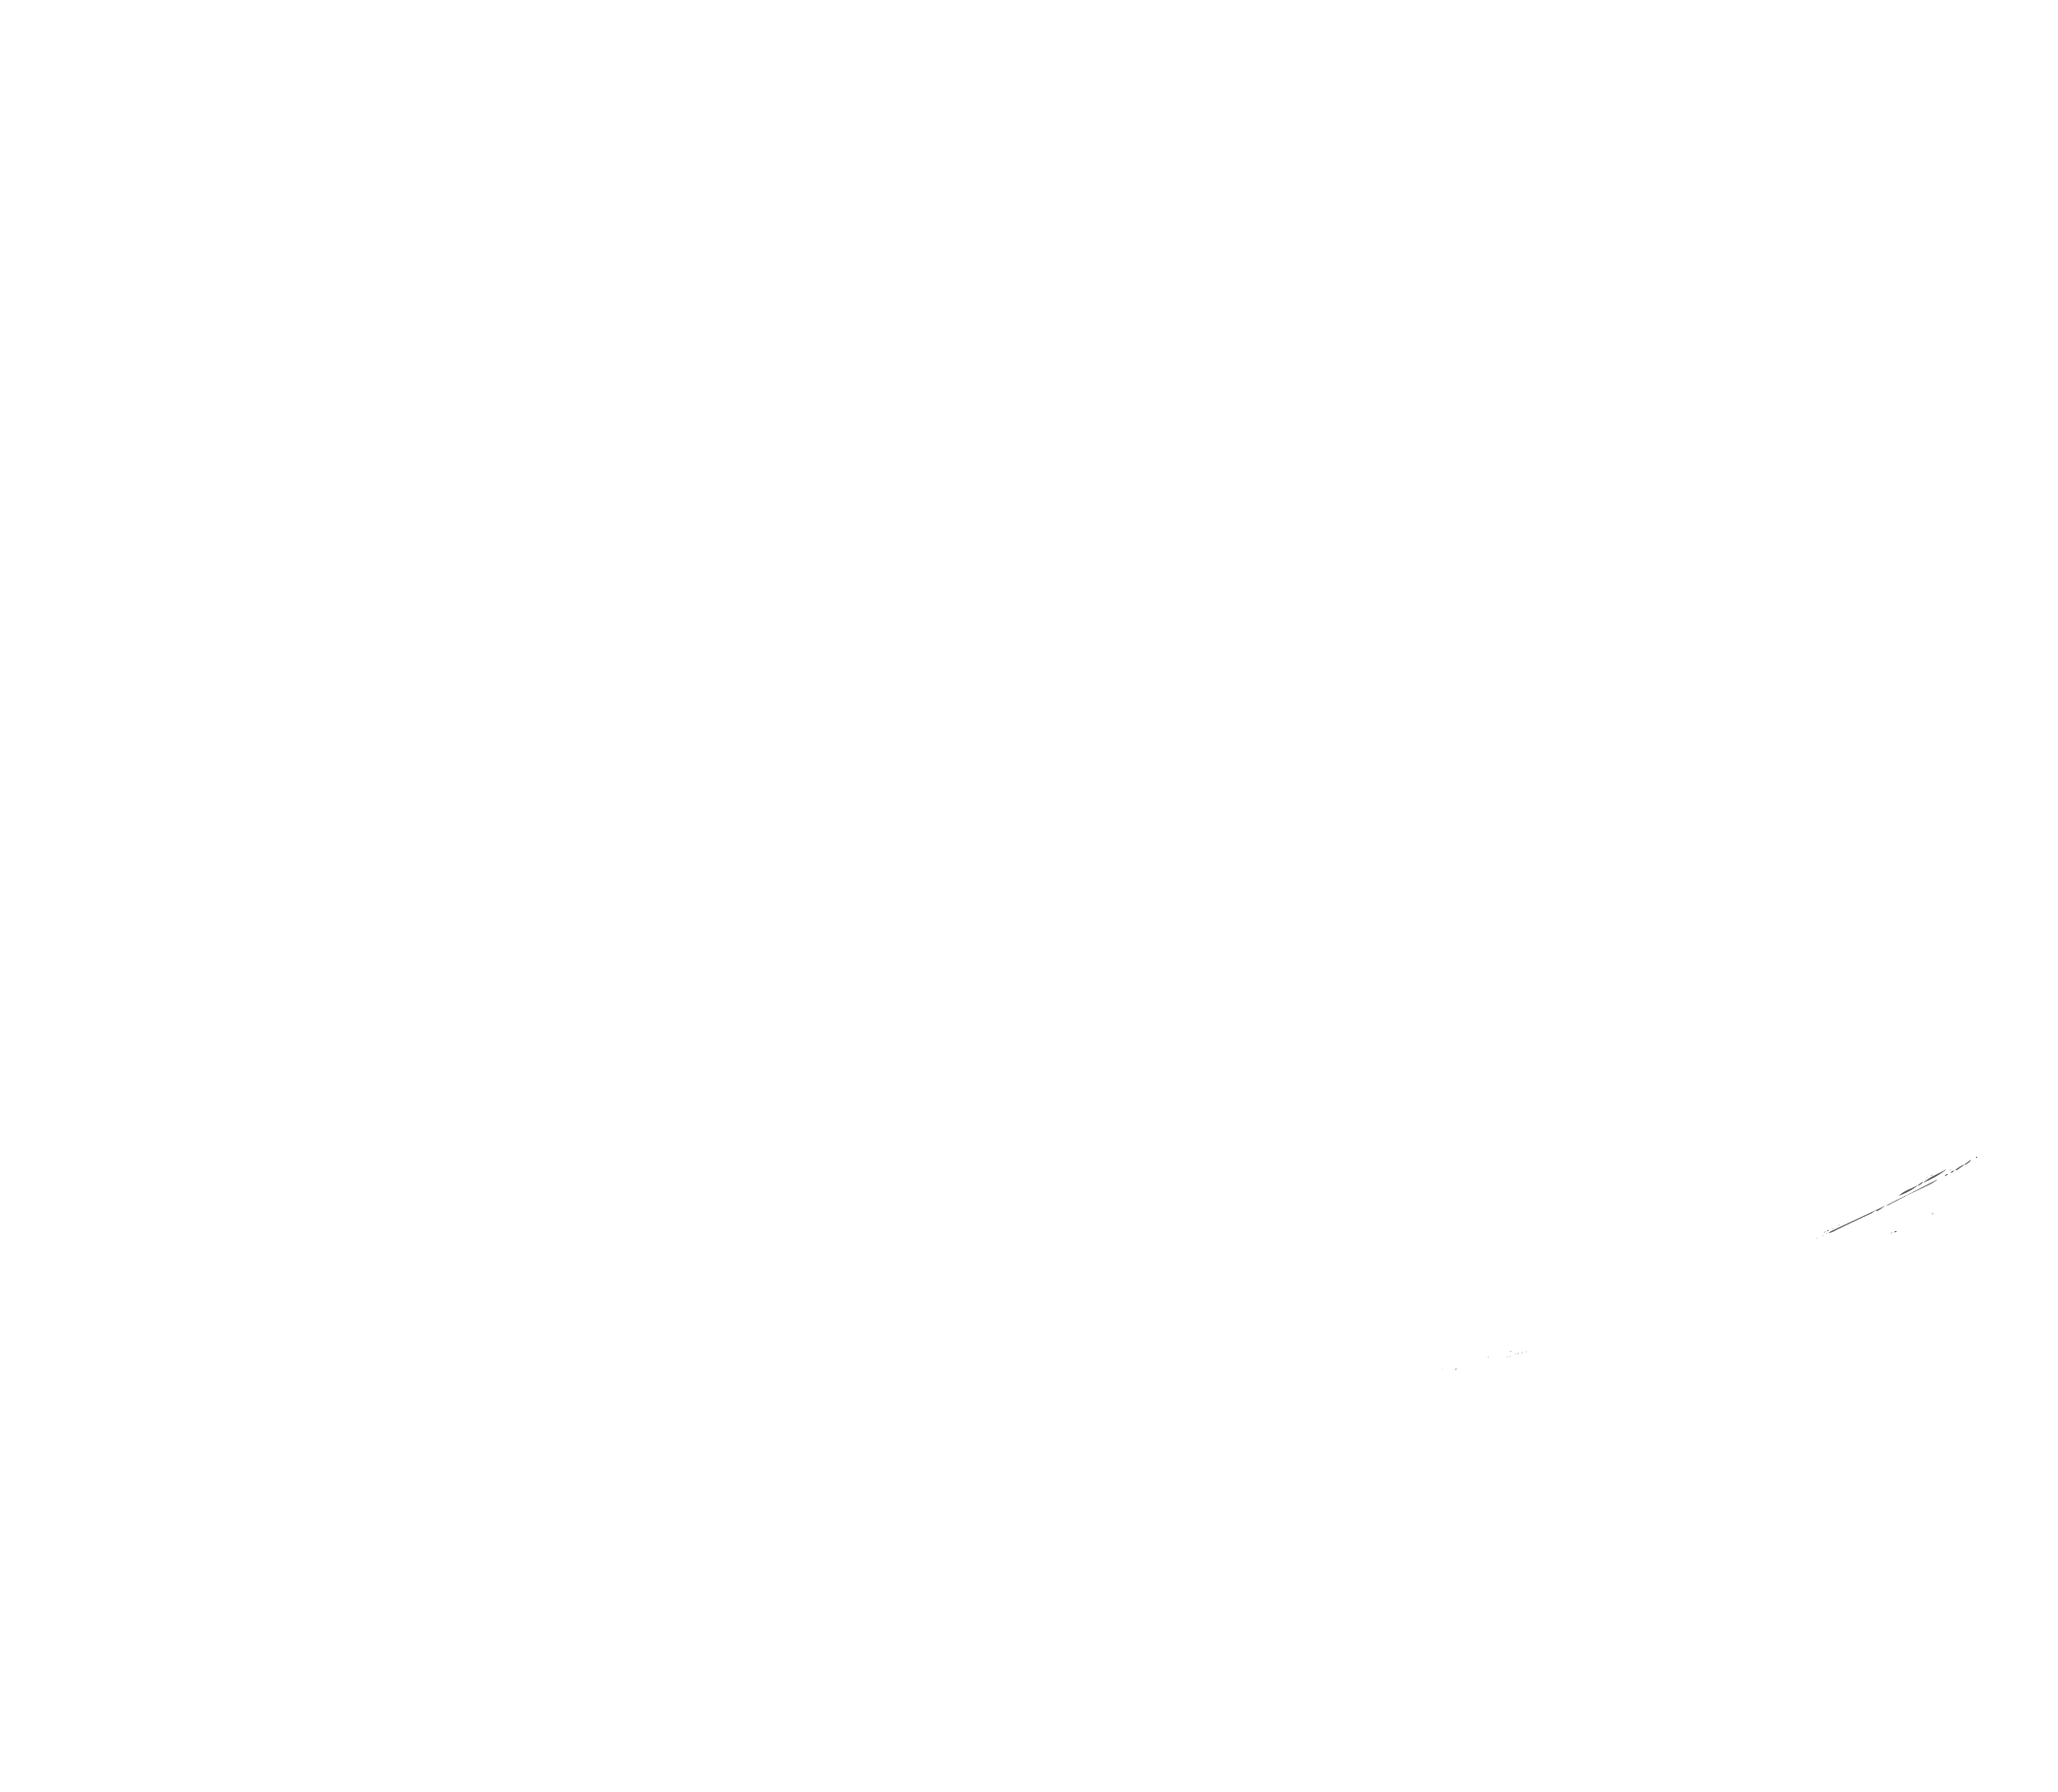 Circuit X